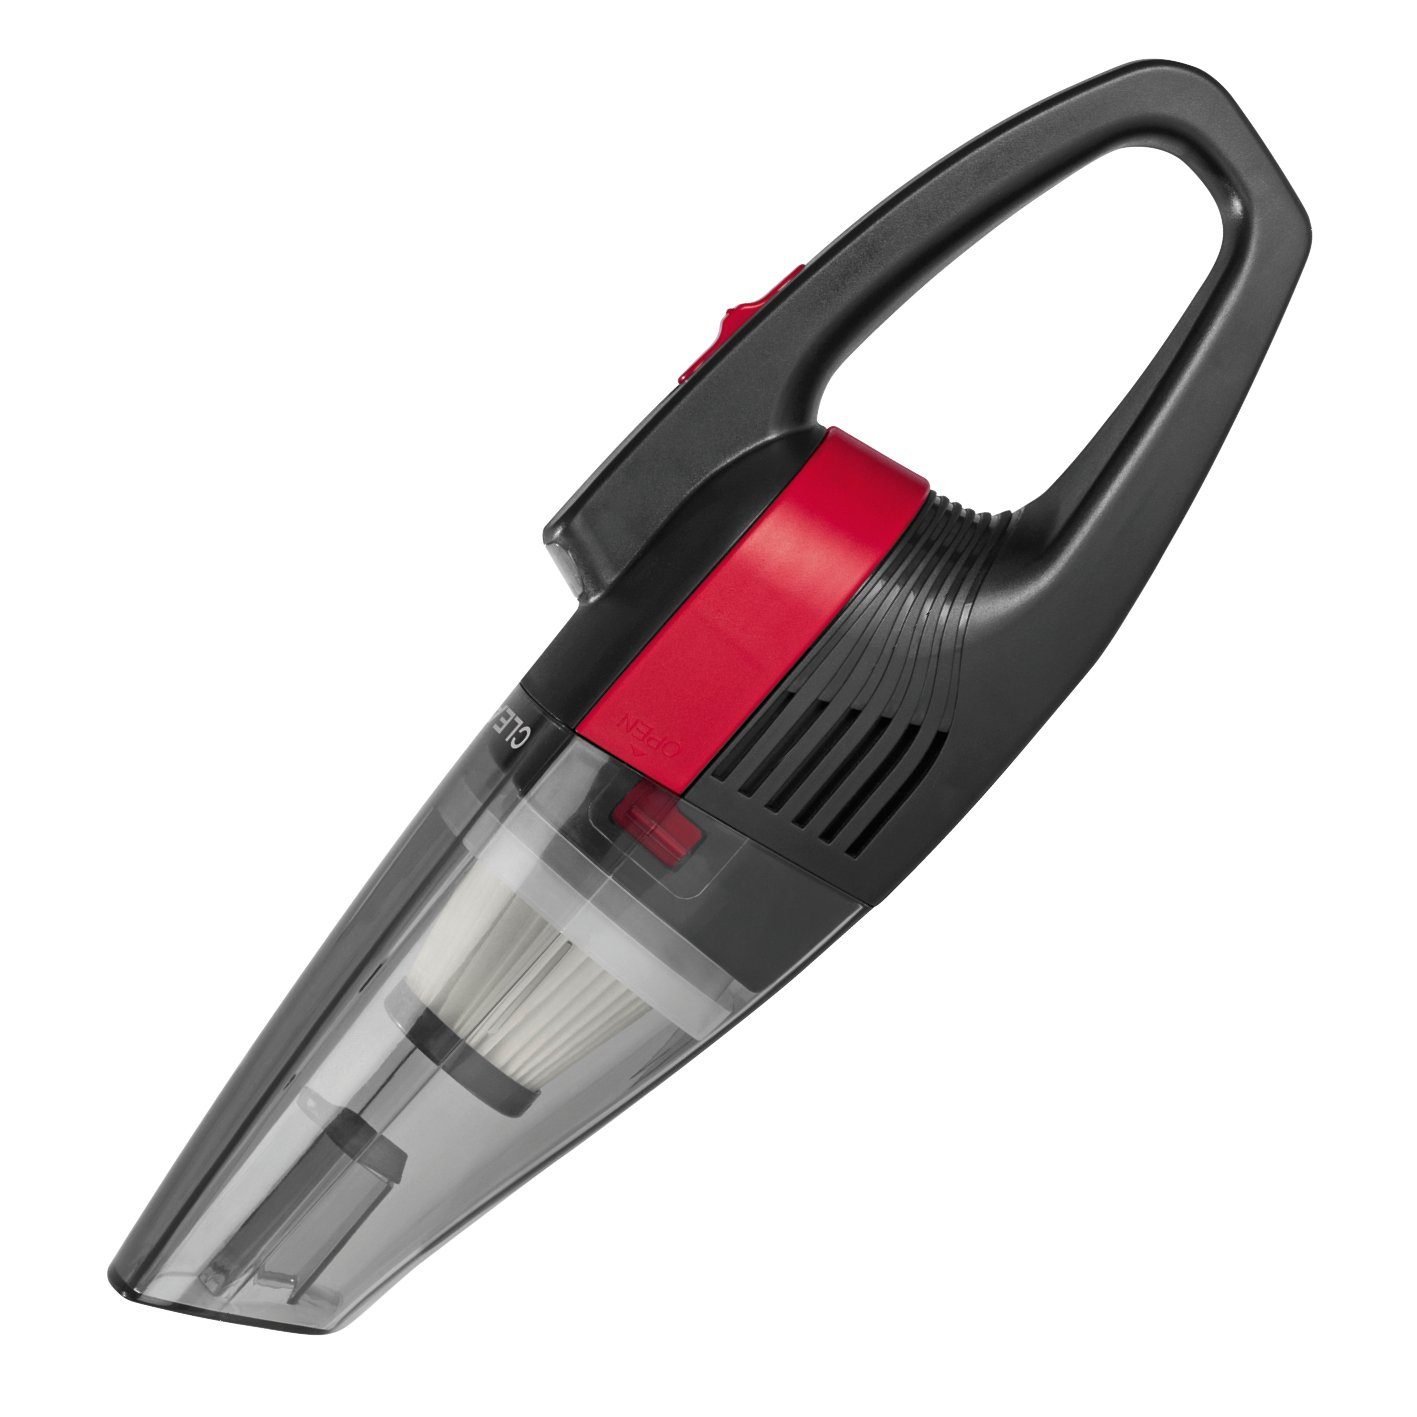 CLEANmaxx Akku-Handstaubsauger Akku Handstaubsauger, 2000 mAh, USB  aufladbar grau/rot, Schmutzauffangbehälter, 7,4 V, tragbar, leicht, ideal  für das Auto geeignet